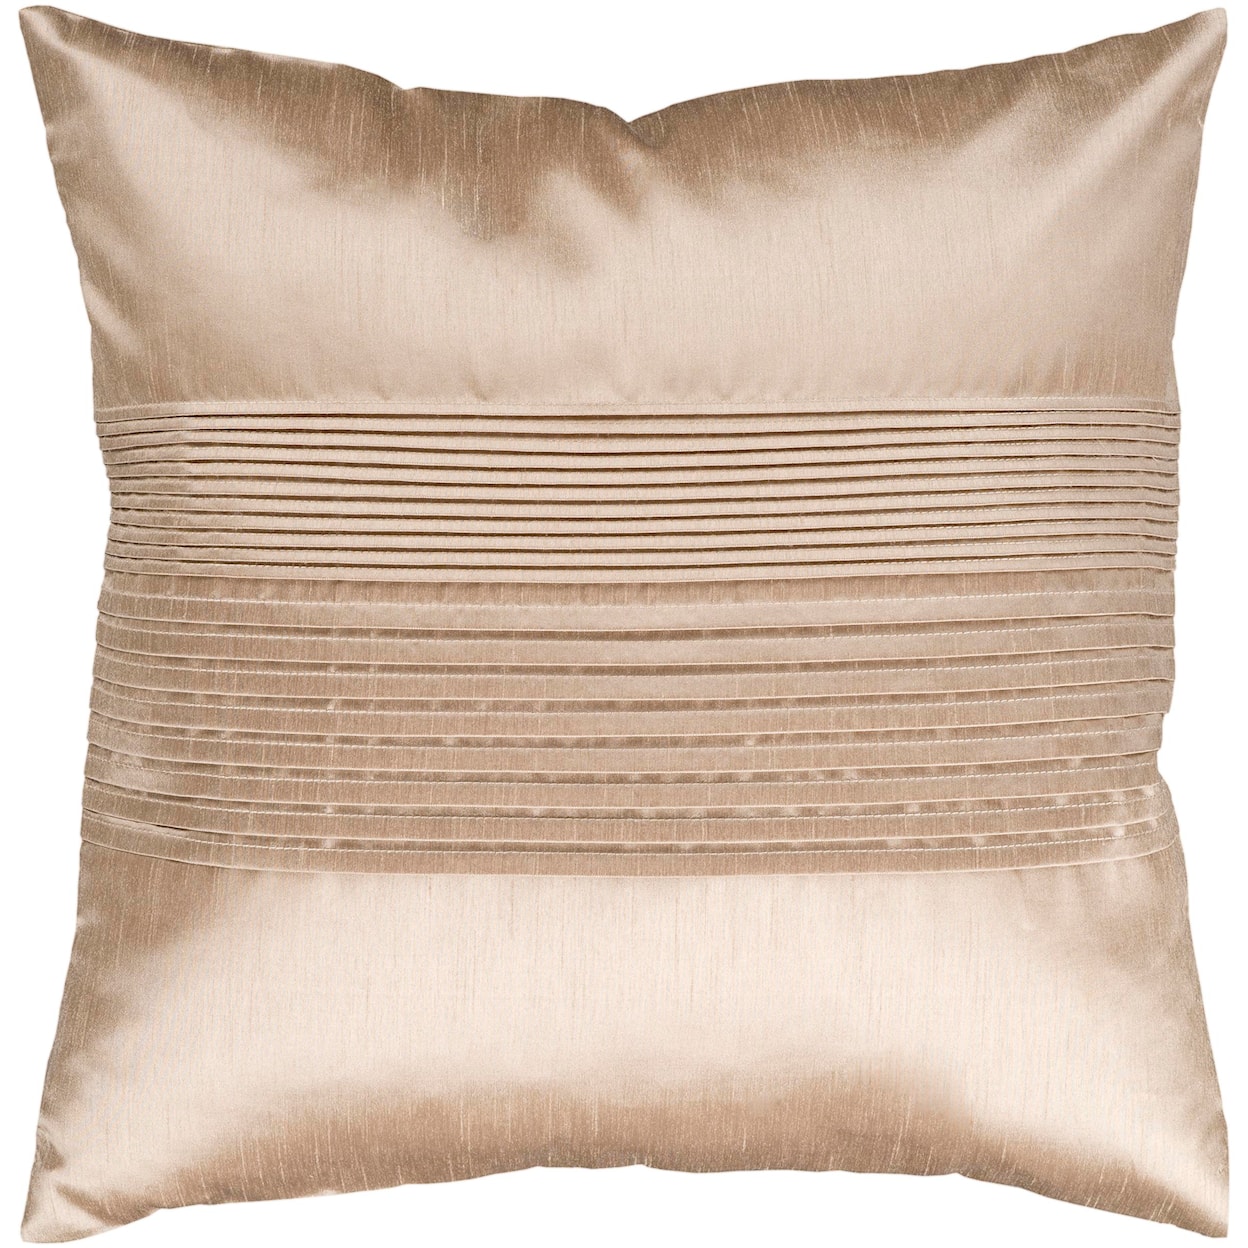 Surya Pillows 18" x 18" Pillow